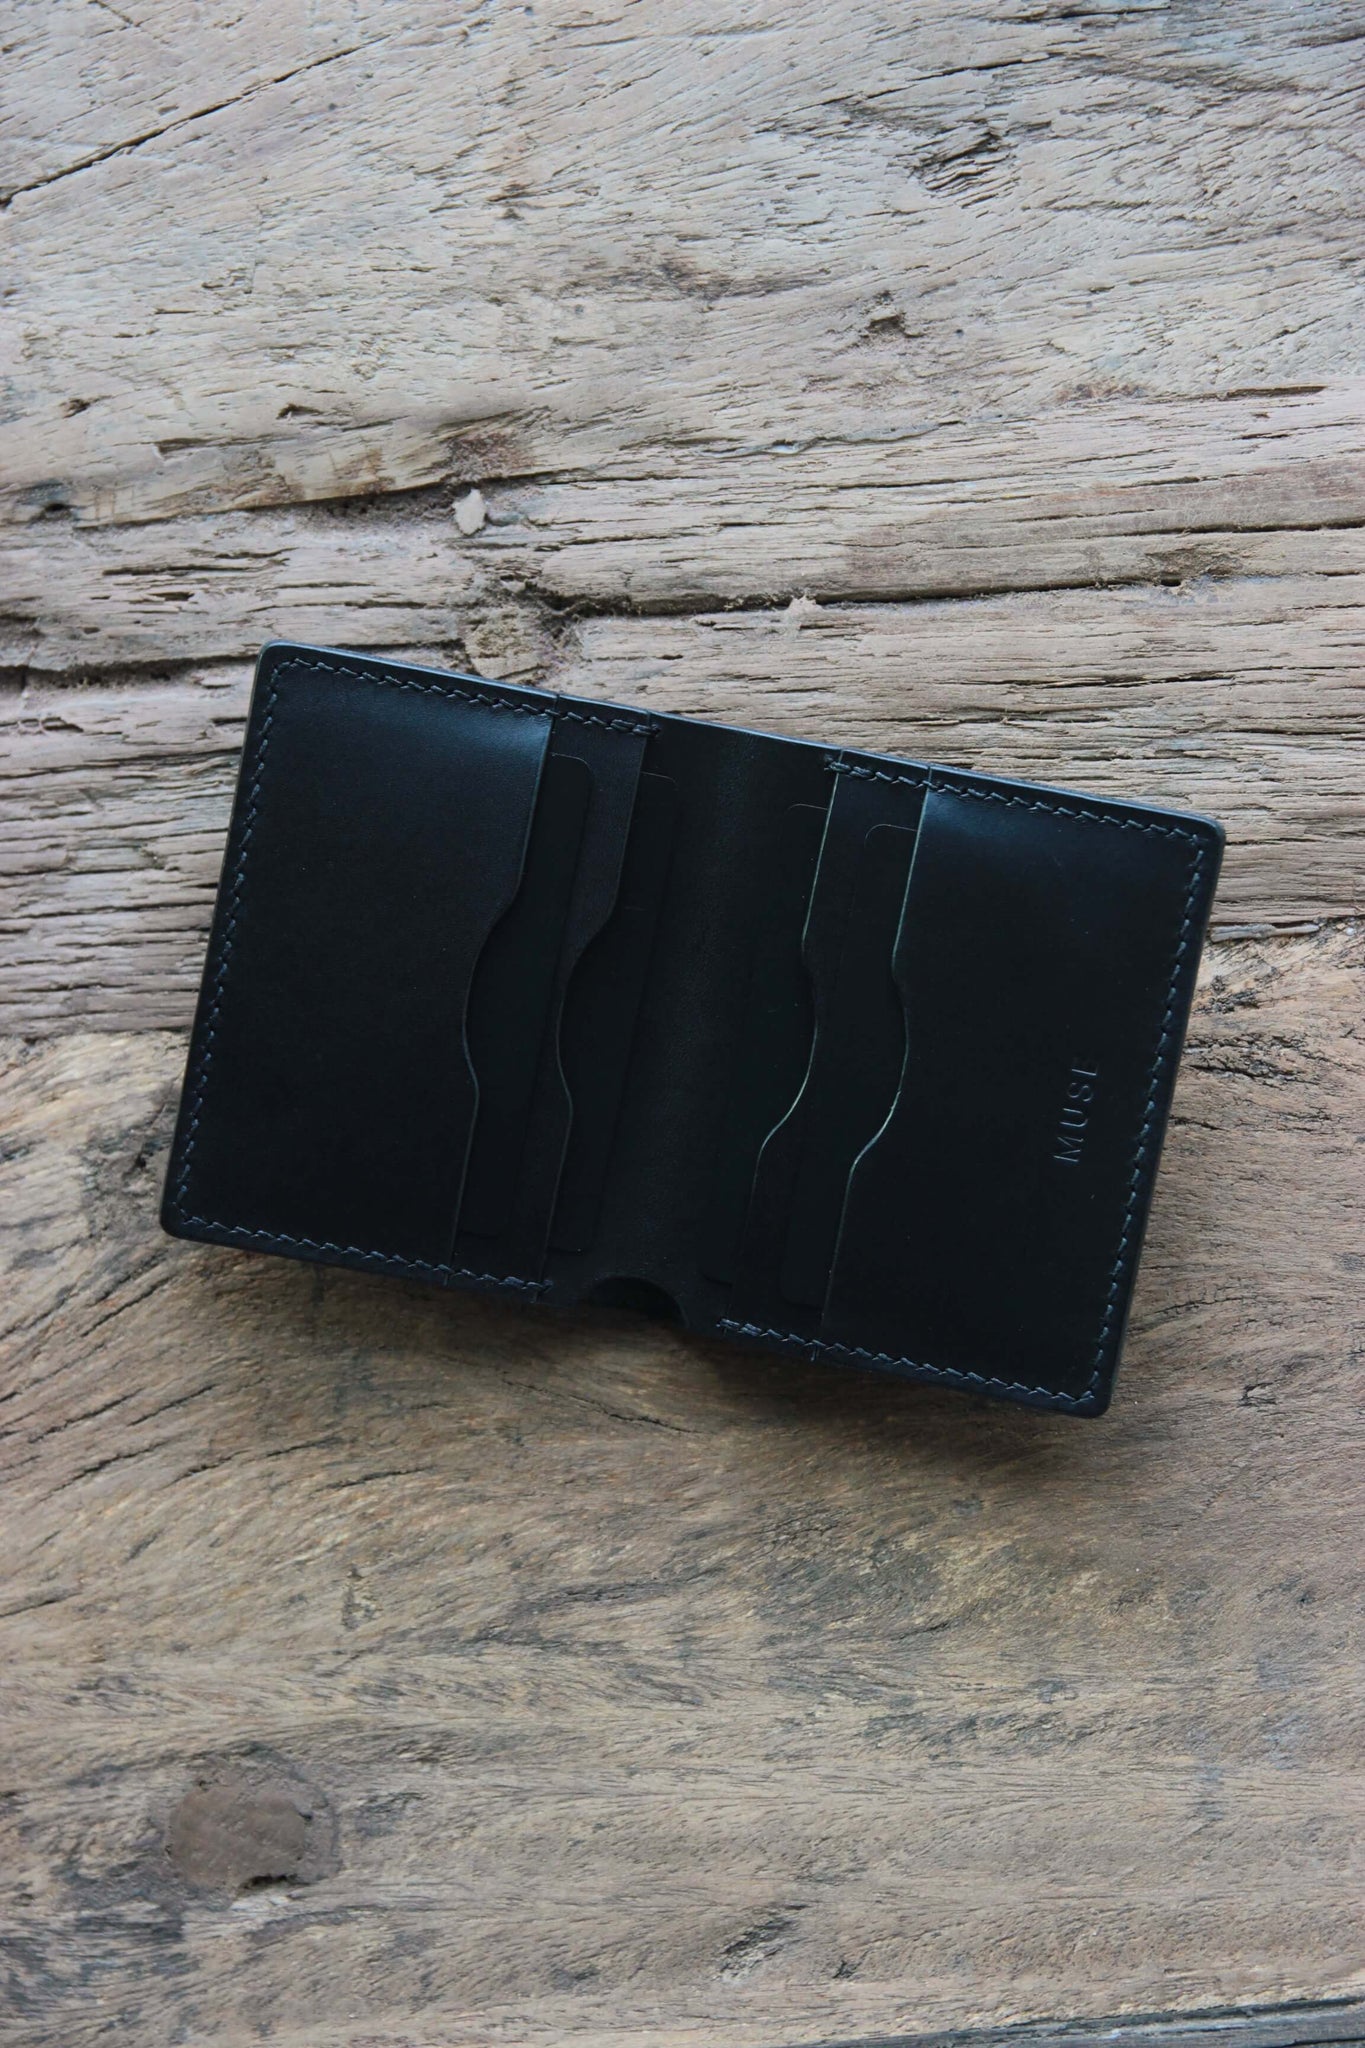 Draufsicht auf ein Leder Kartenetui in Schwarz auf einer Holzplatte liegend.